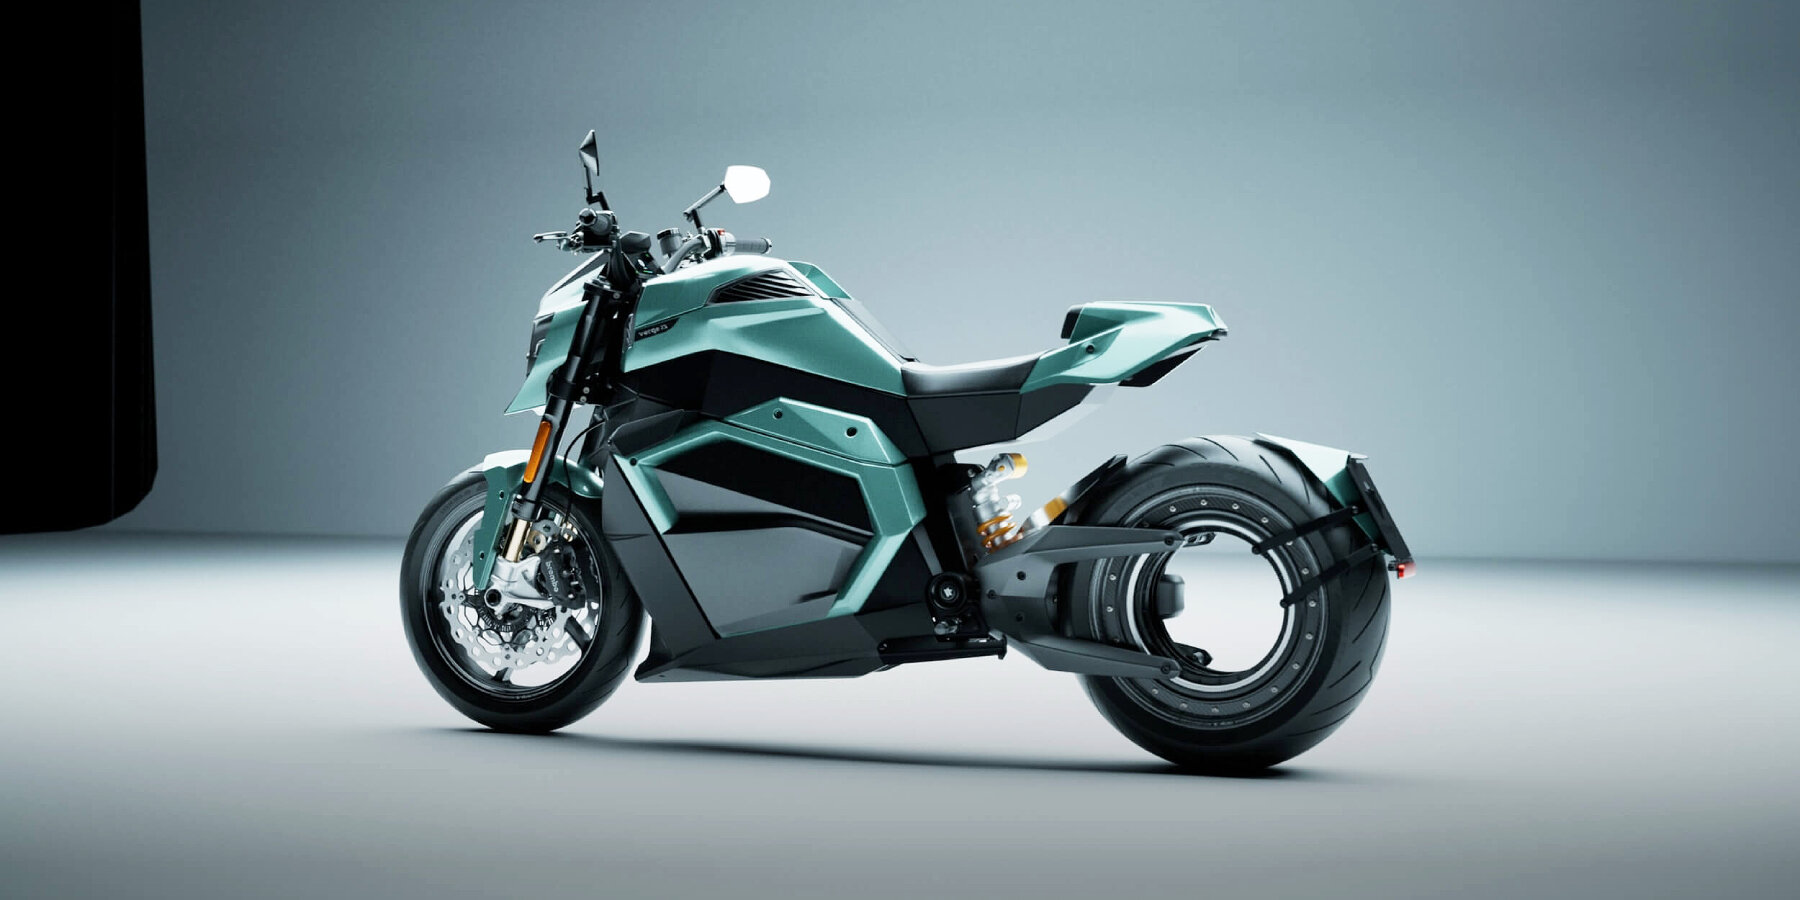 设计资讯 | 新款 Verge 电动摩托车